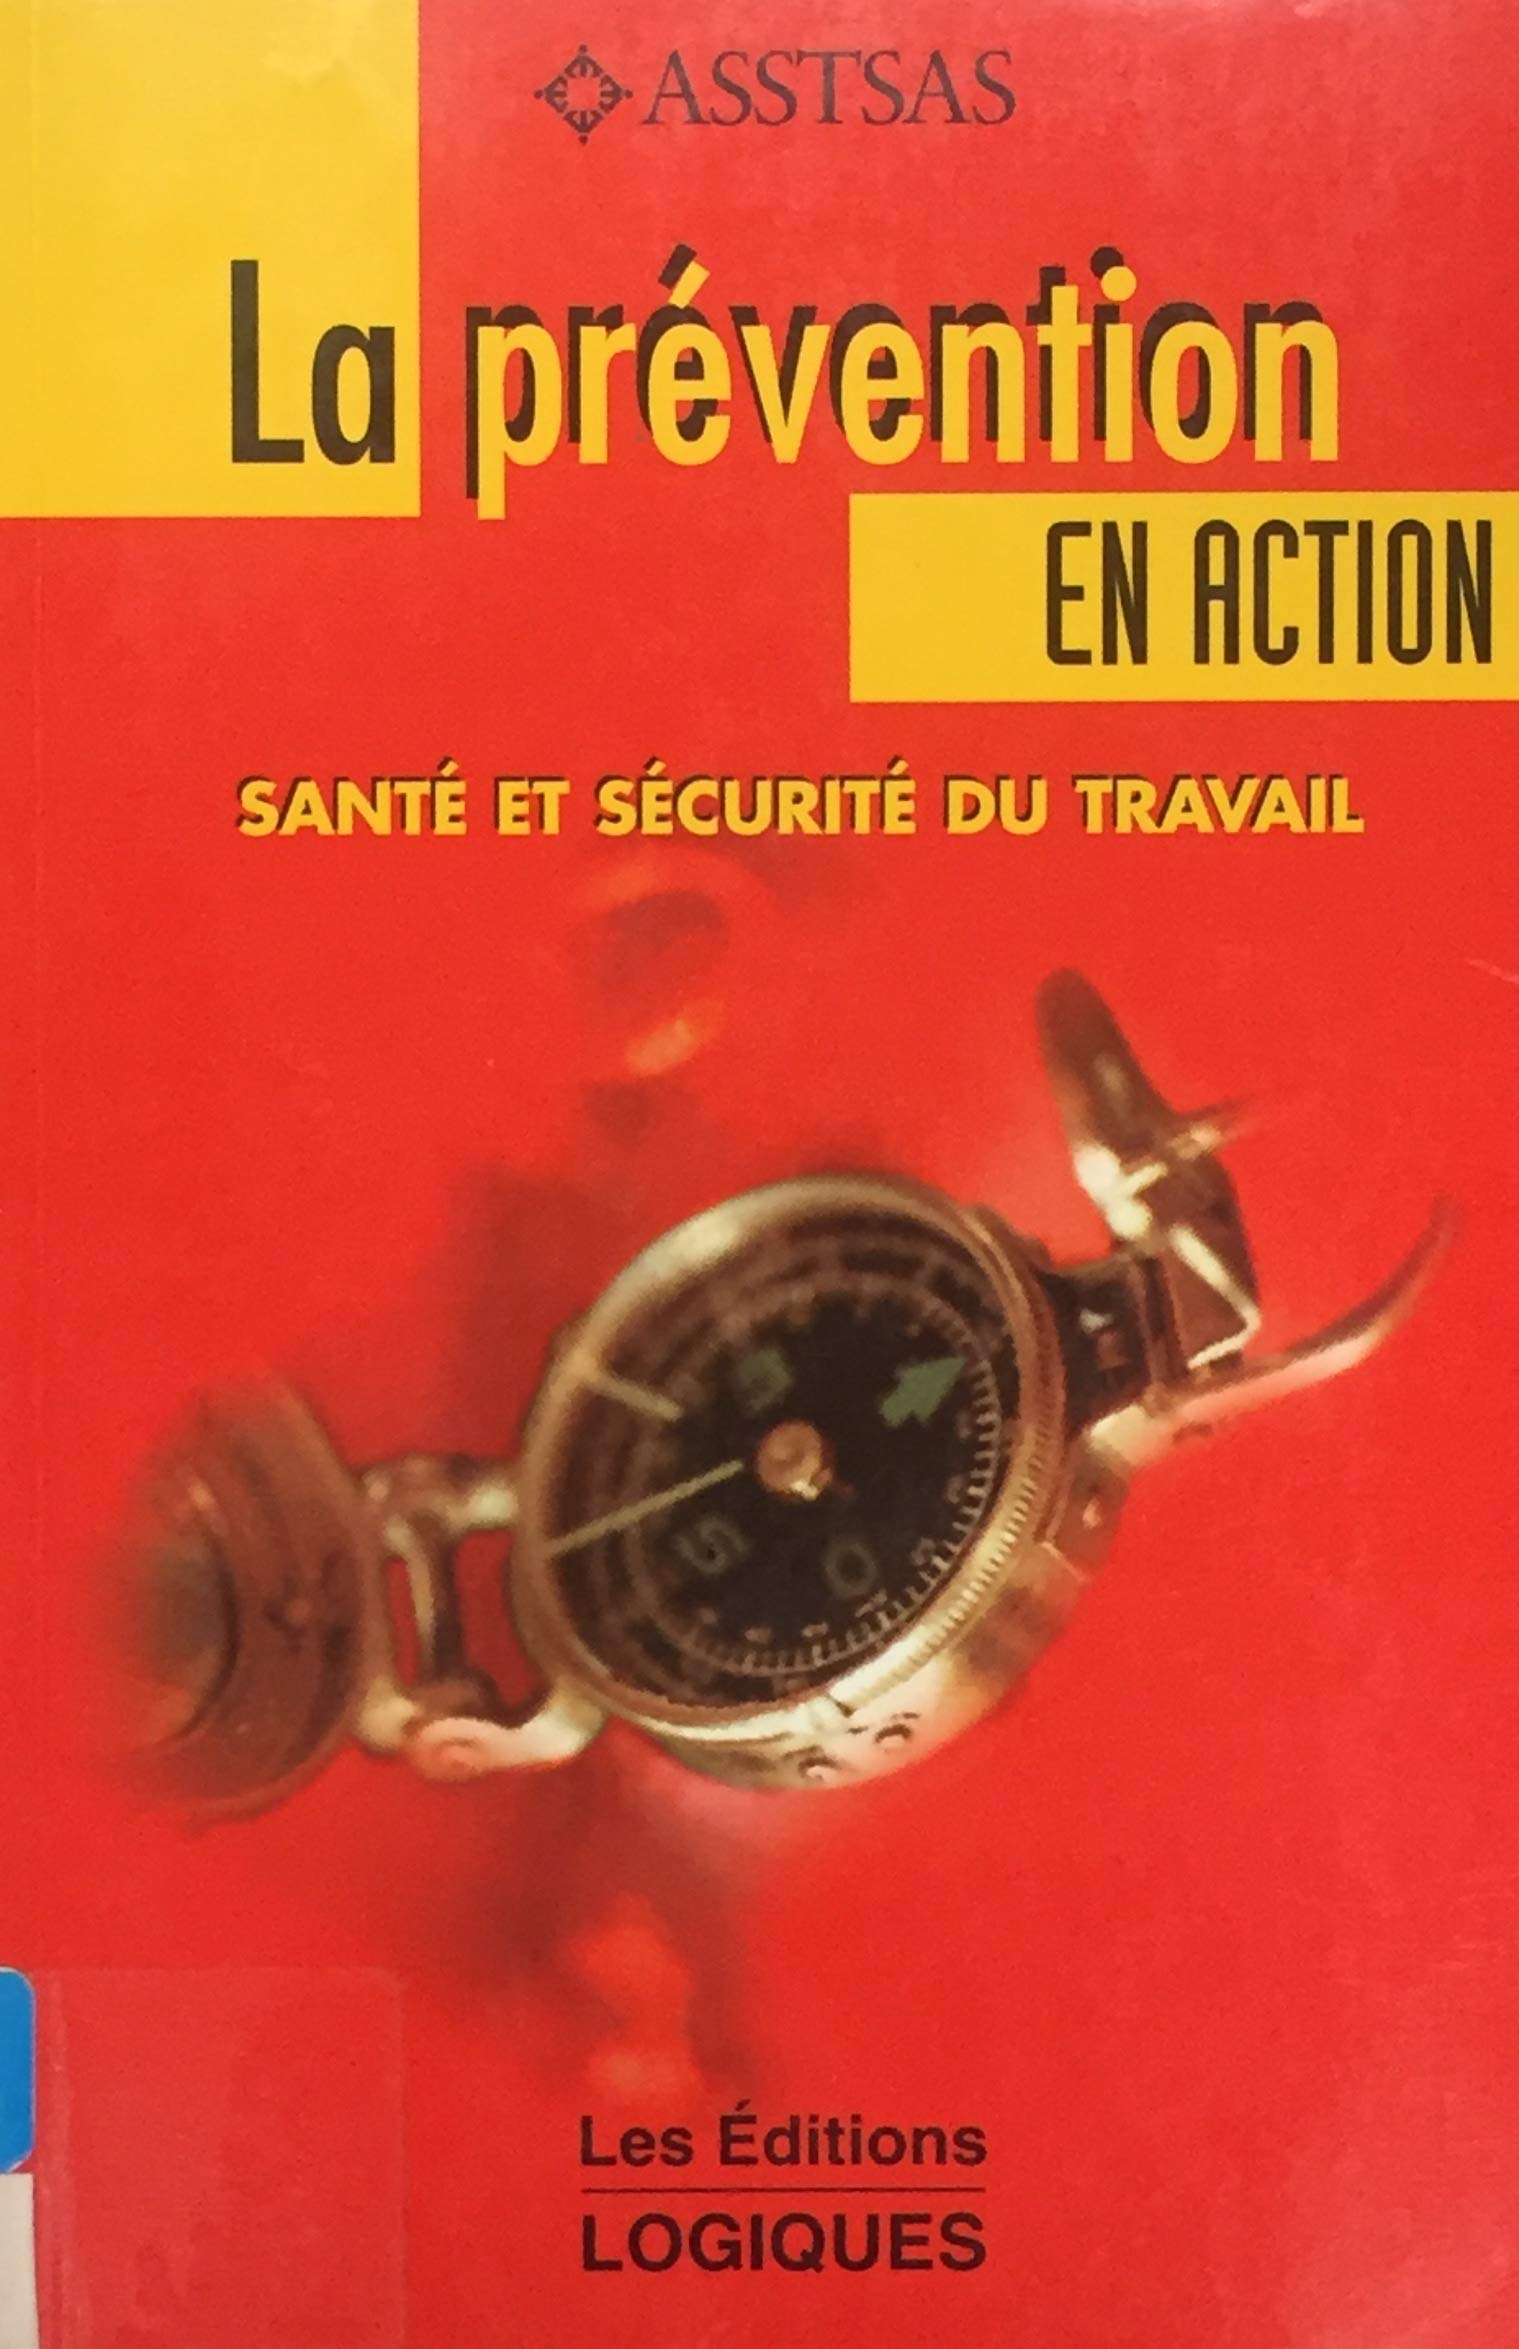 Livre ISBN 2893815464 La prévention en action : Santé et sécurité du travail (ASSTSAS)